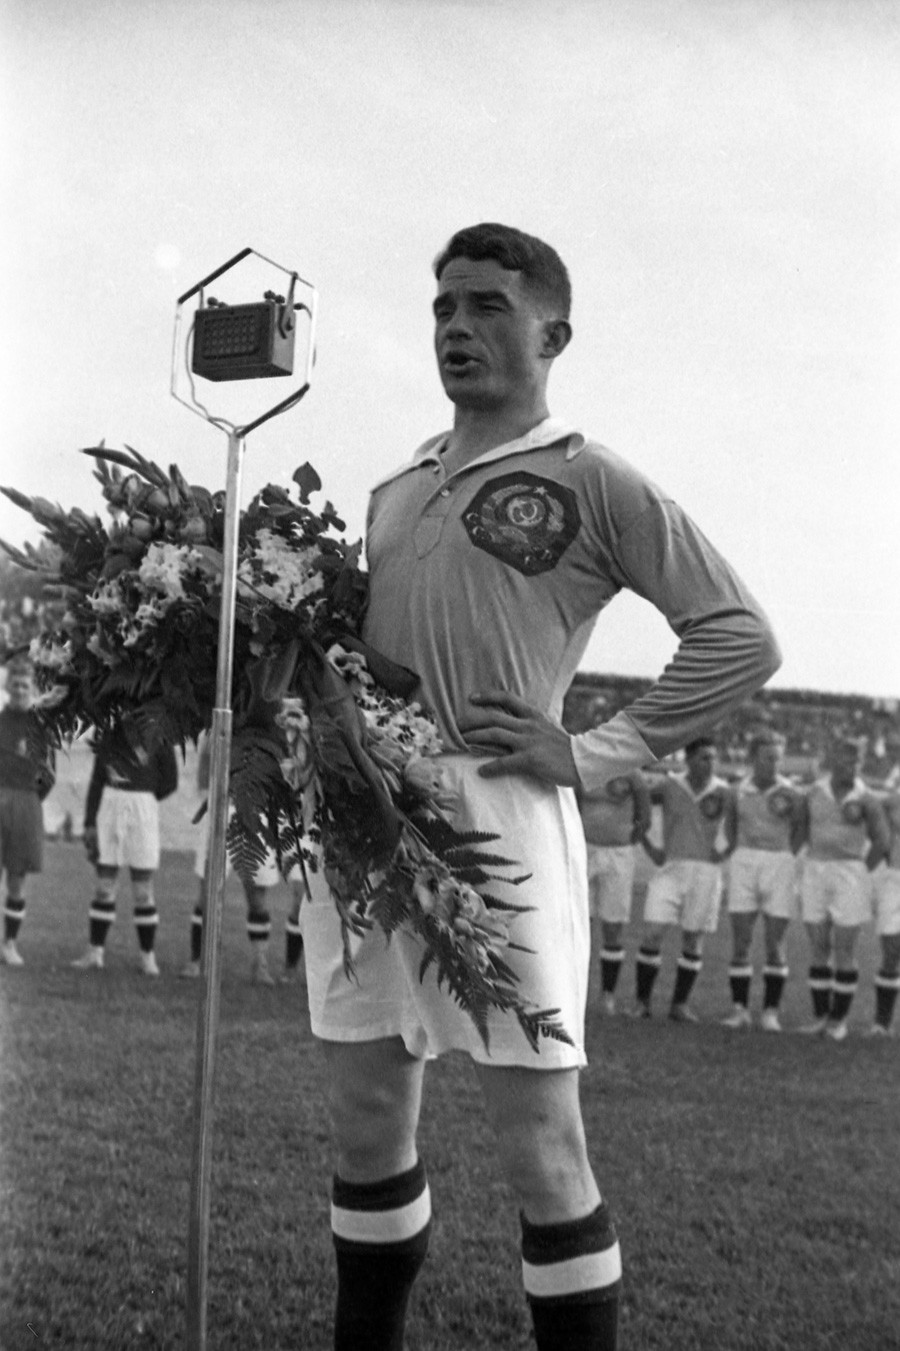 Николај Старостин, совјетски фудбалер, заслужени мајстор спорта СССР-а, оснивач фубалске екипе „Спартак“, играч репрезентације СССР.